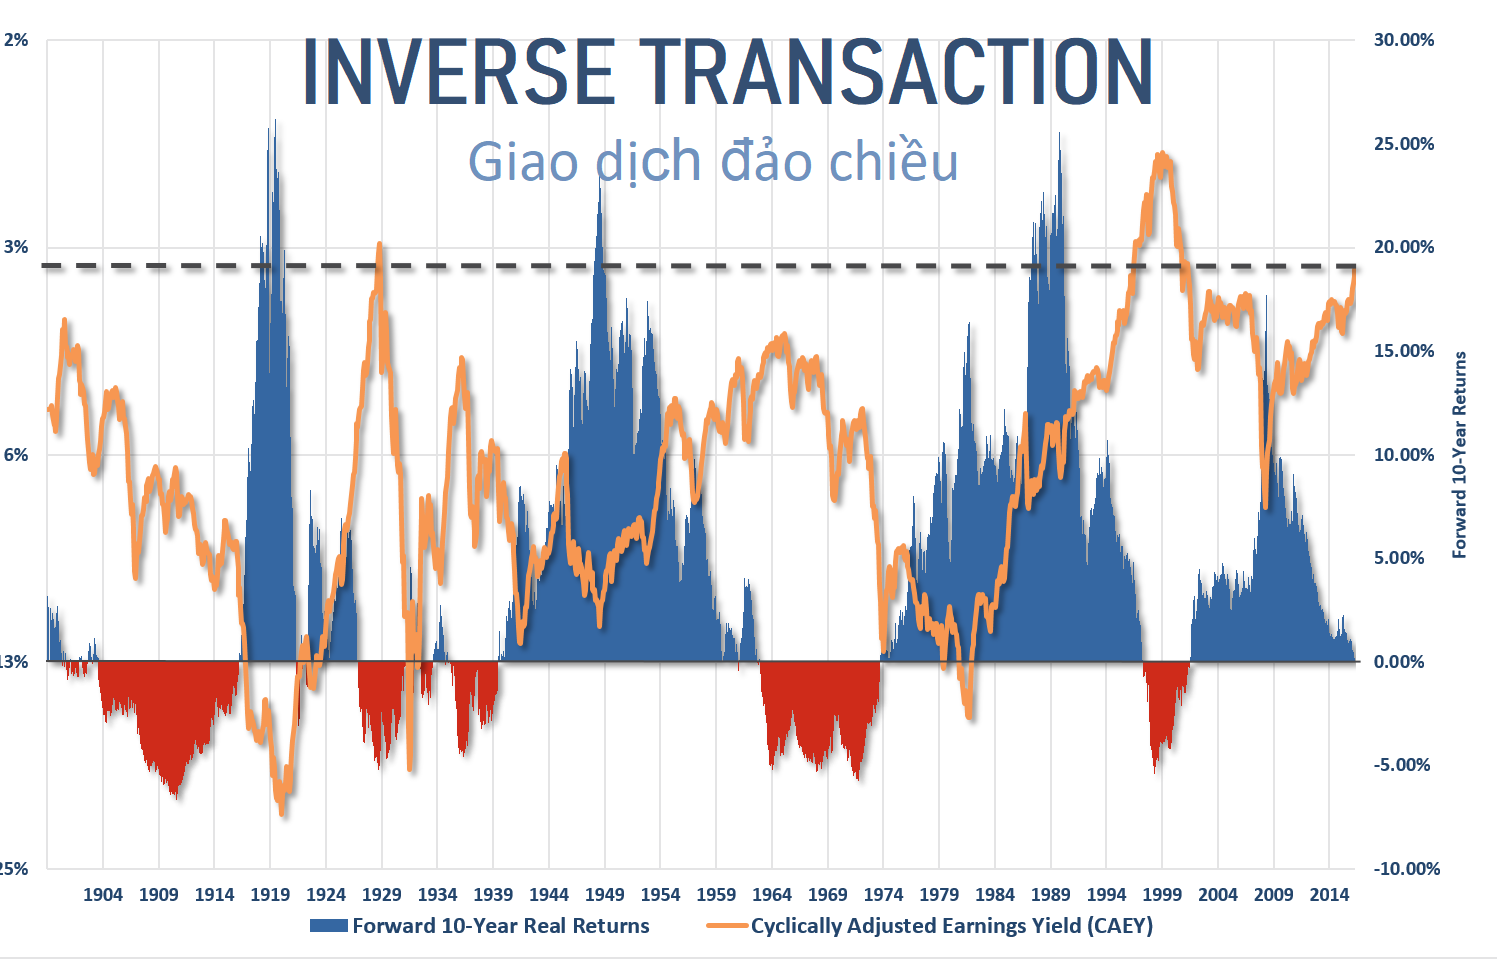 Ý nghĩa và đặc điểm của giao dịch đảo chiều (Inverse Transaction) trong tài chính